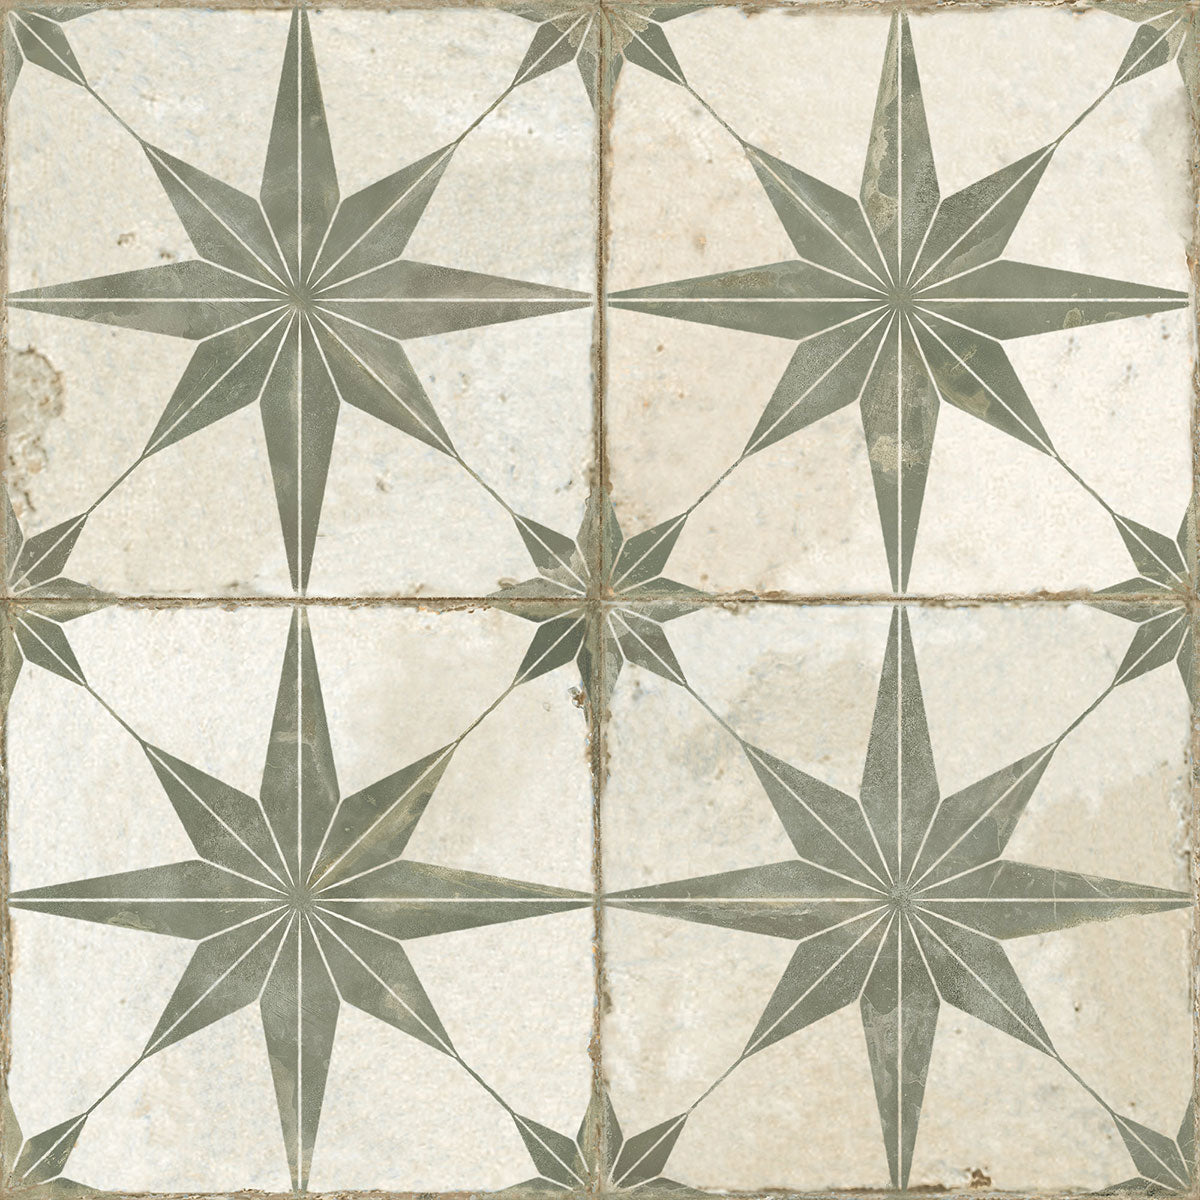 FS Star Sage Natural Tile 45 x 45cm